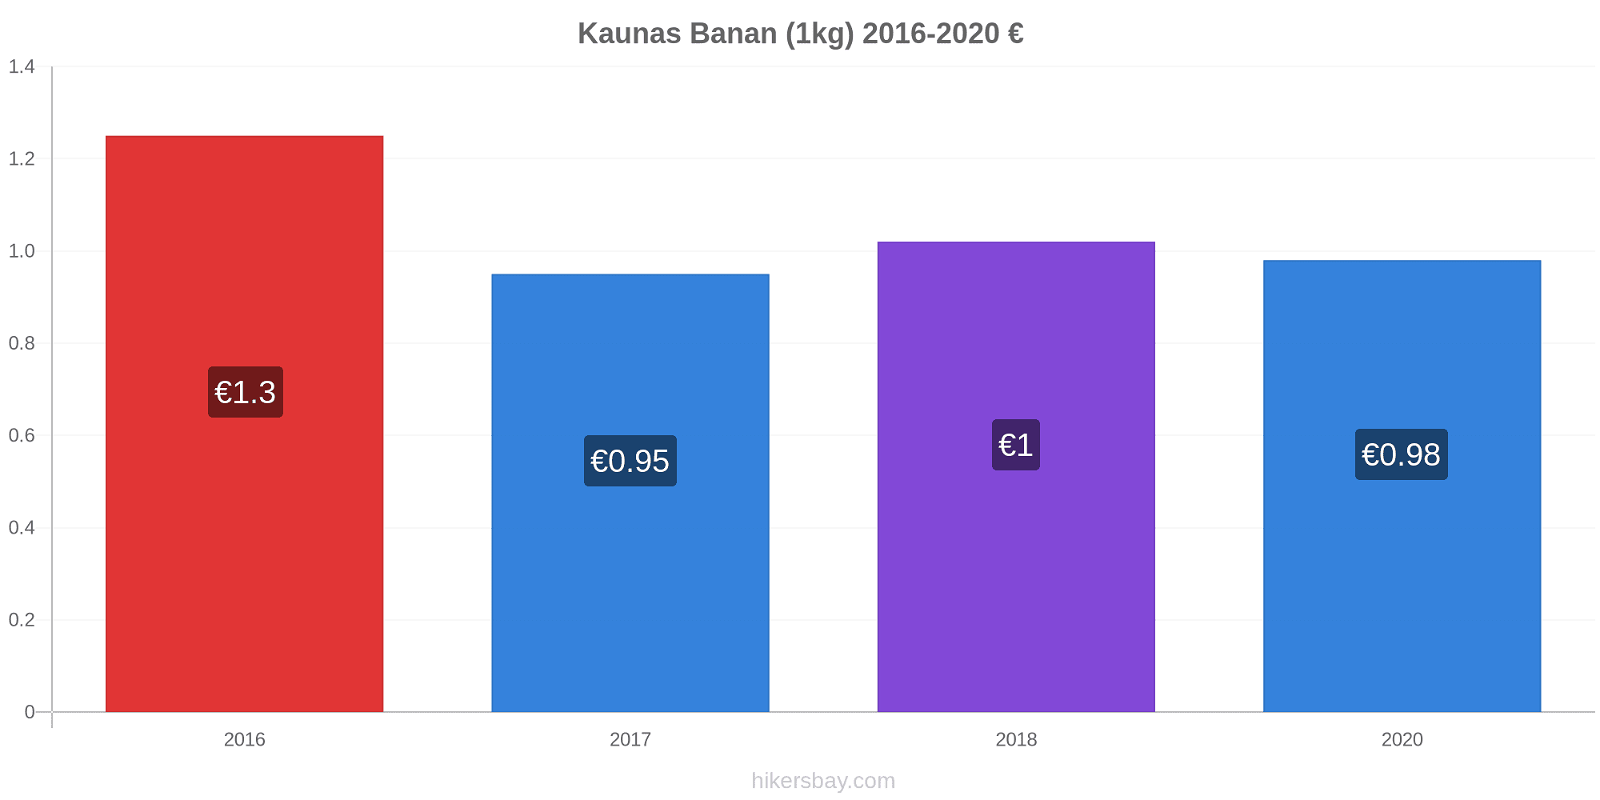 Kaunas prisförändringar Banan (1kg) hikersbay.com